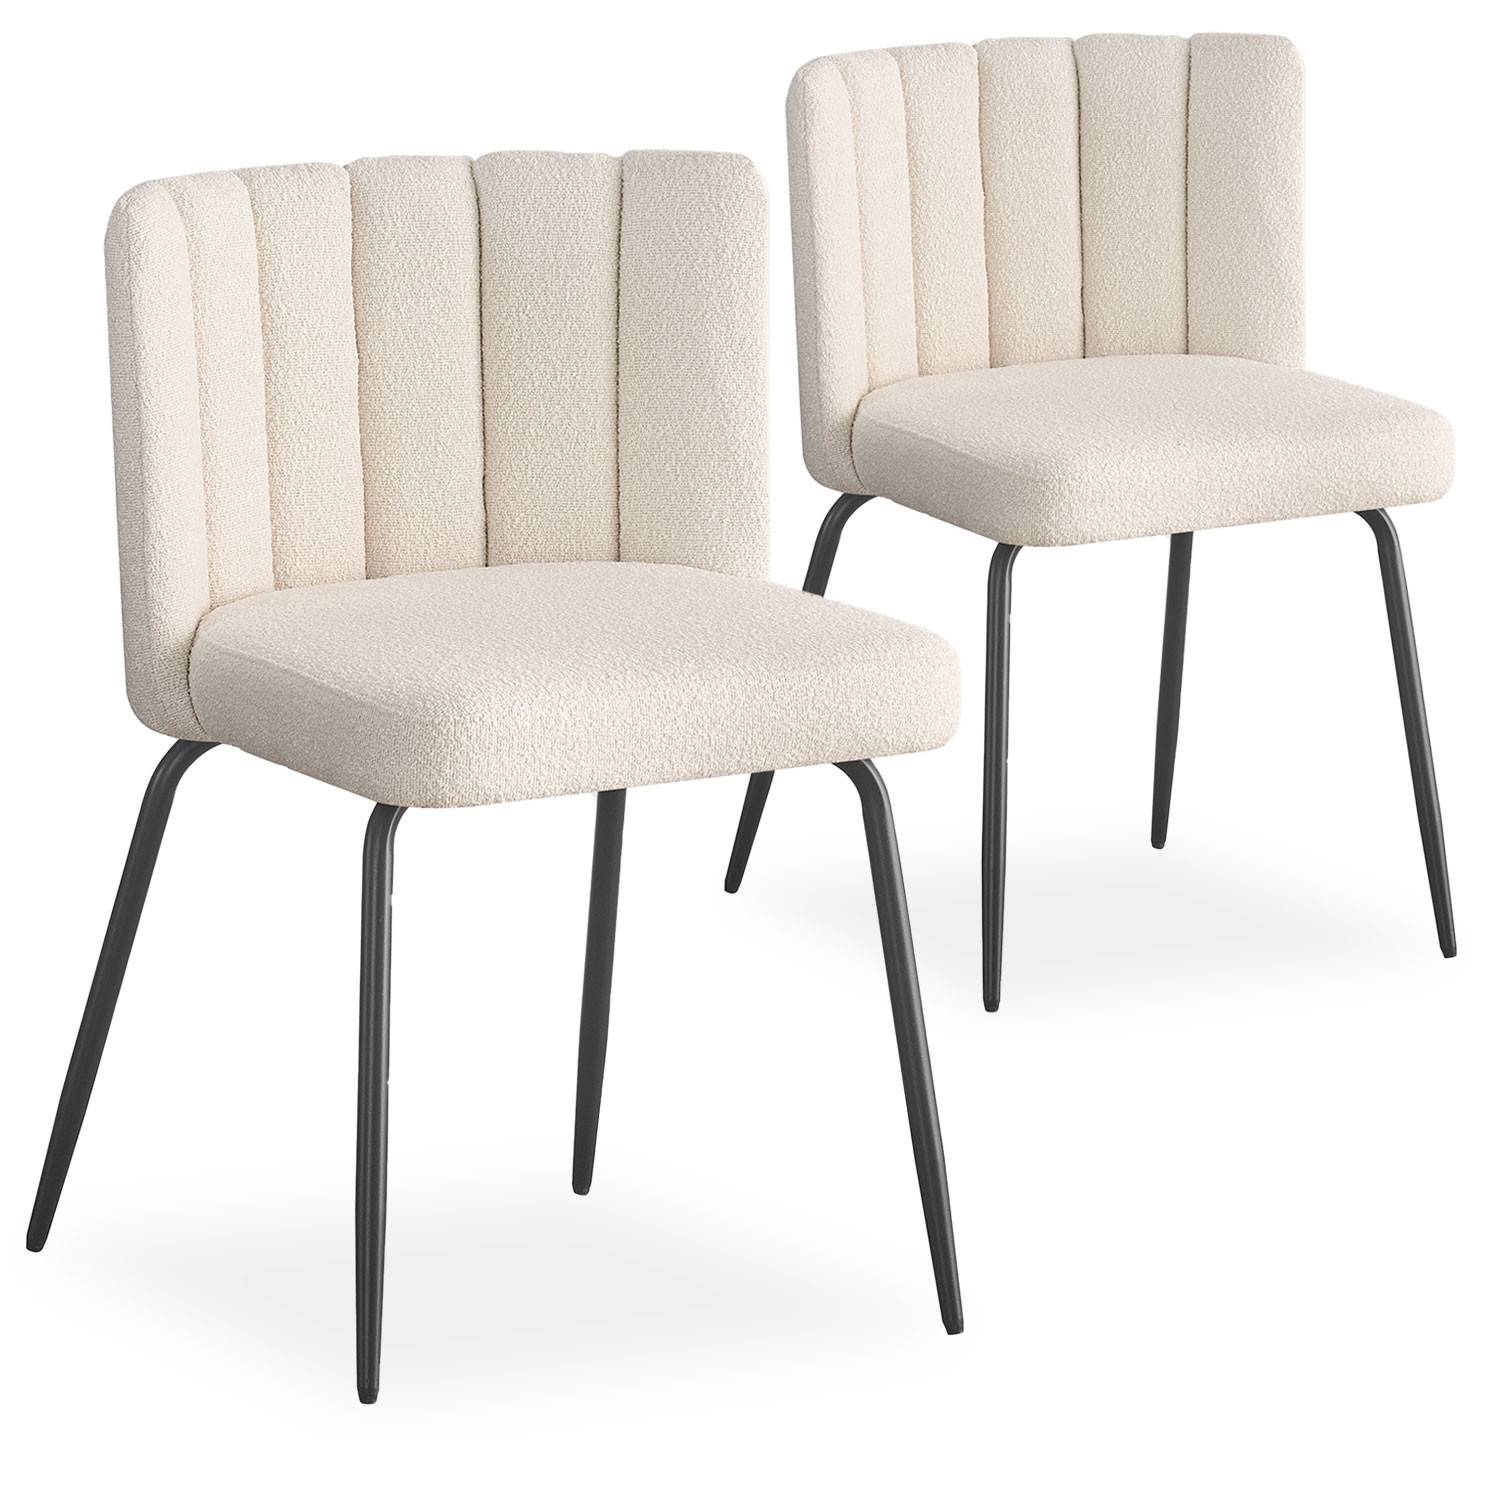 Lote de 2 sillas de diseño Sabine Tela efecto borrego crema